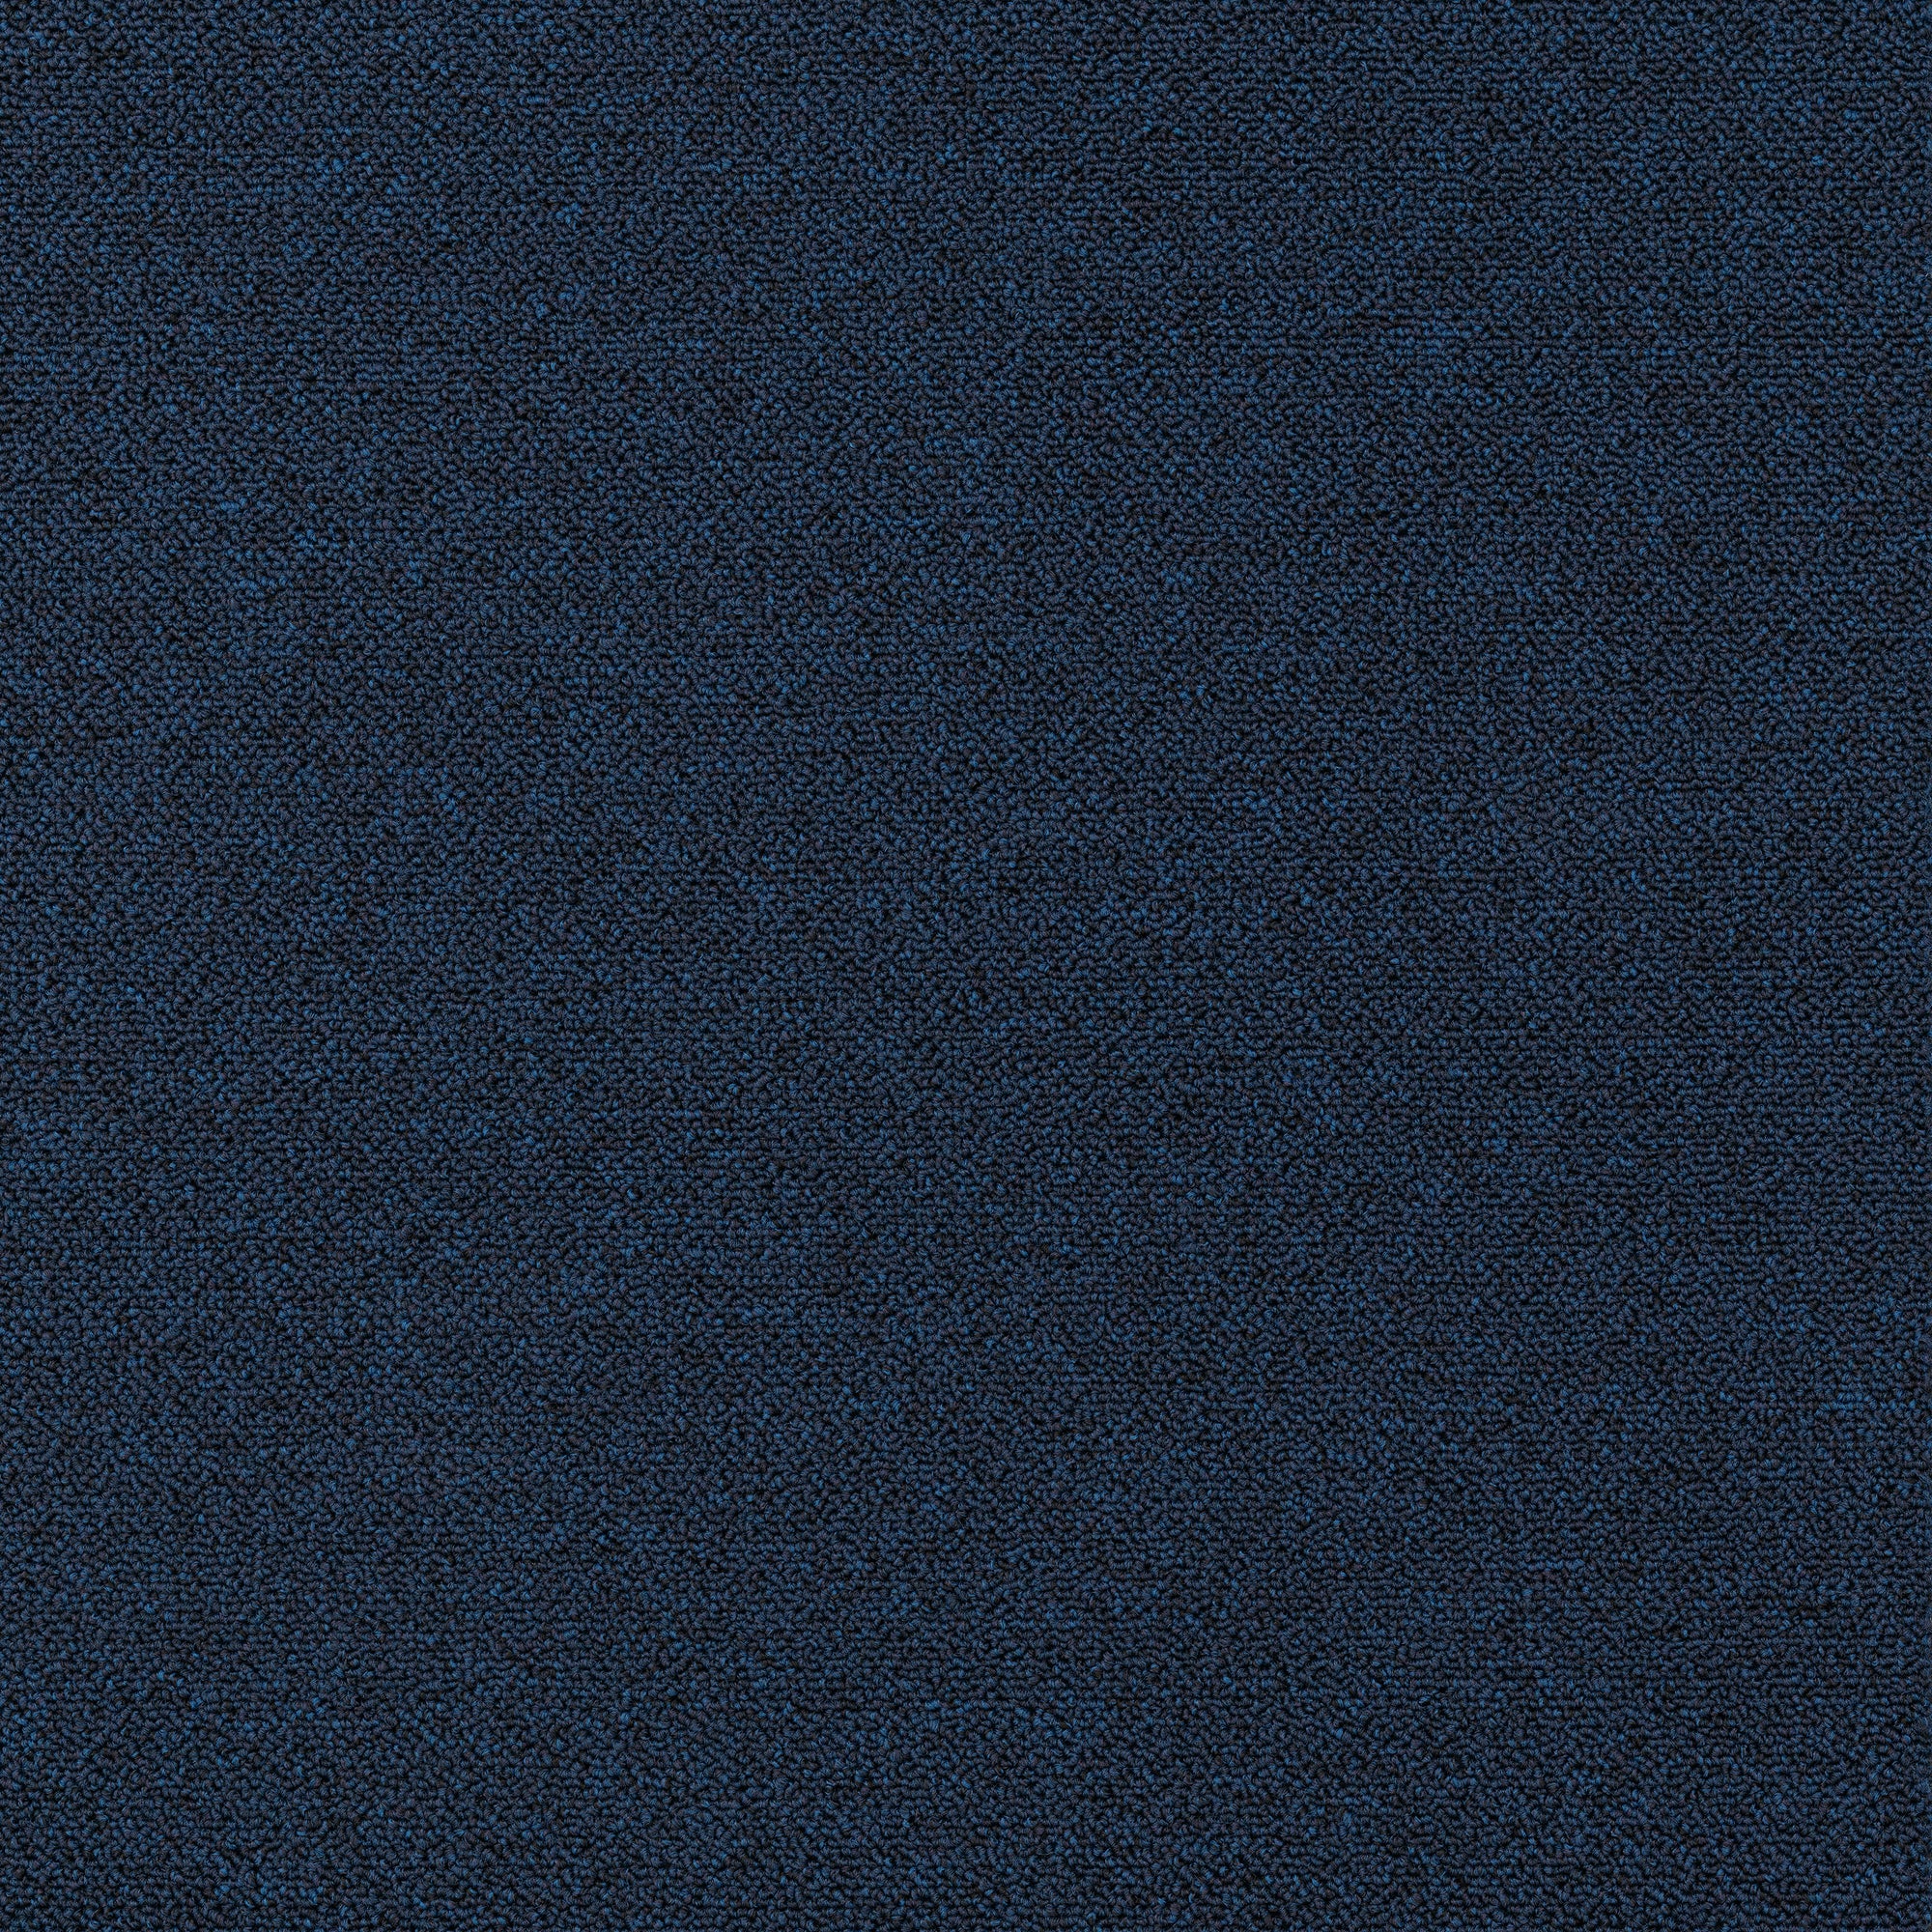 Plusfloor Rekka Navy Blue carpet tiles for offices 100% Nylon